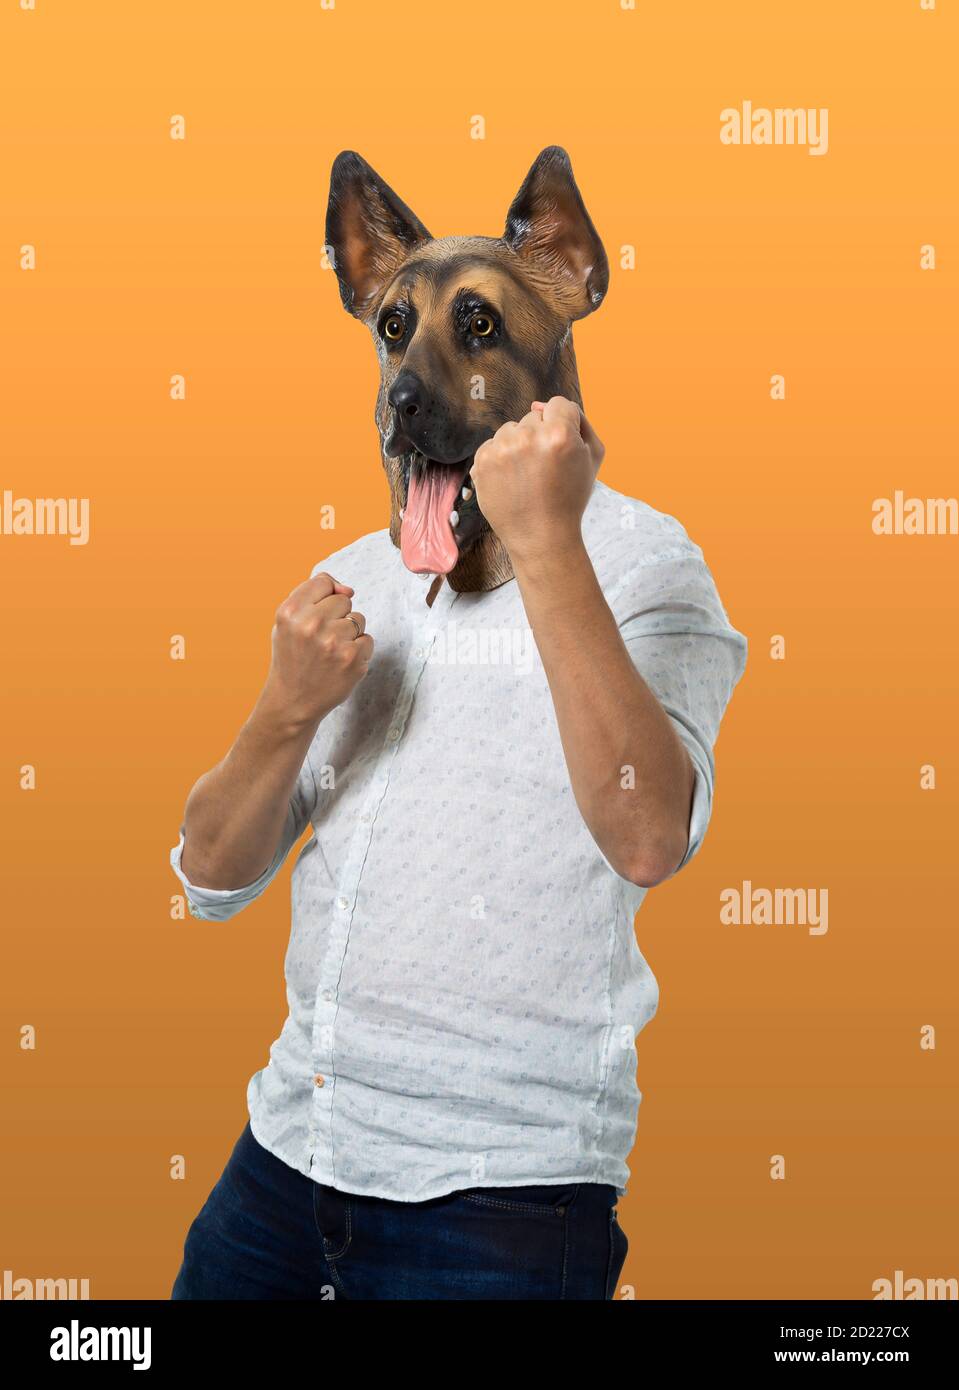 Homme portant un masque de chien en position de combat avec des poings serrés. Prise de vue moyenne. Arrière-plan orange isolé. Banque D'Images